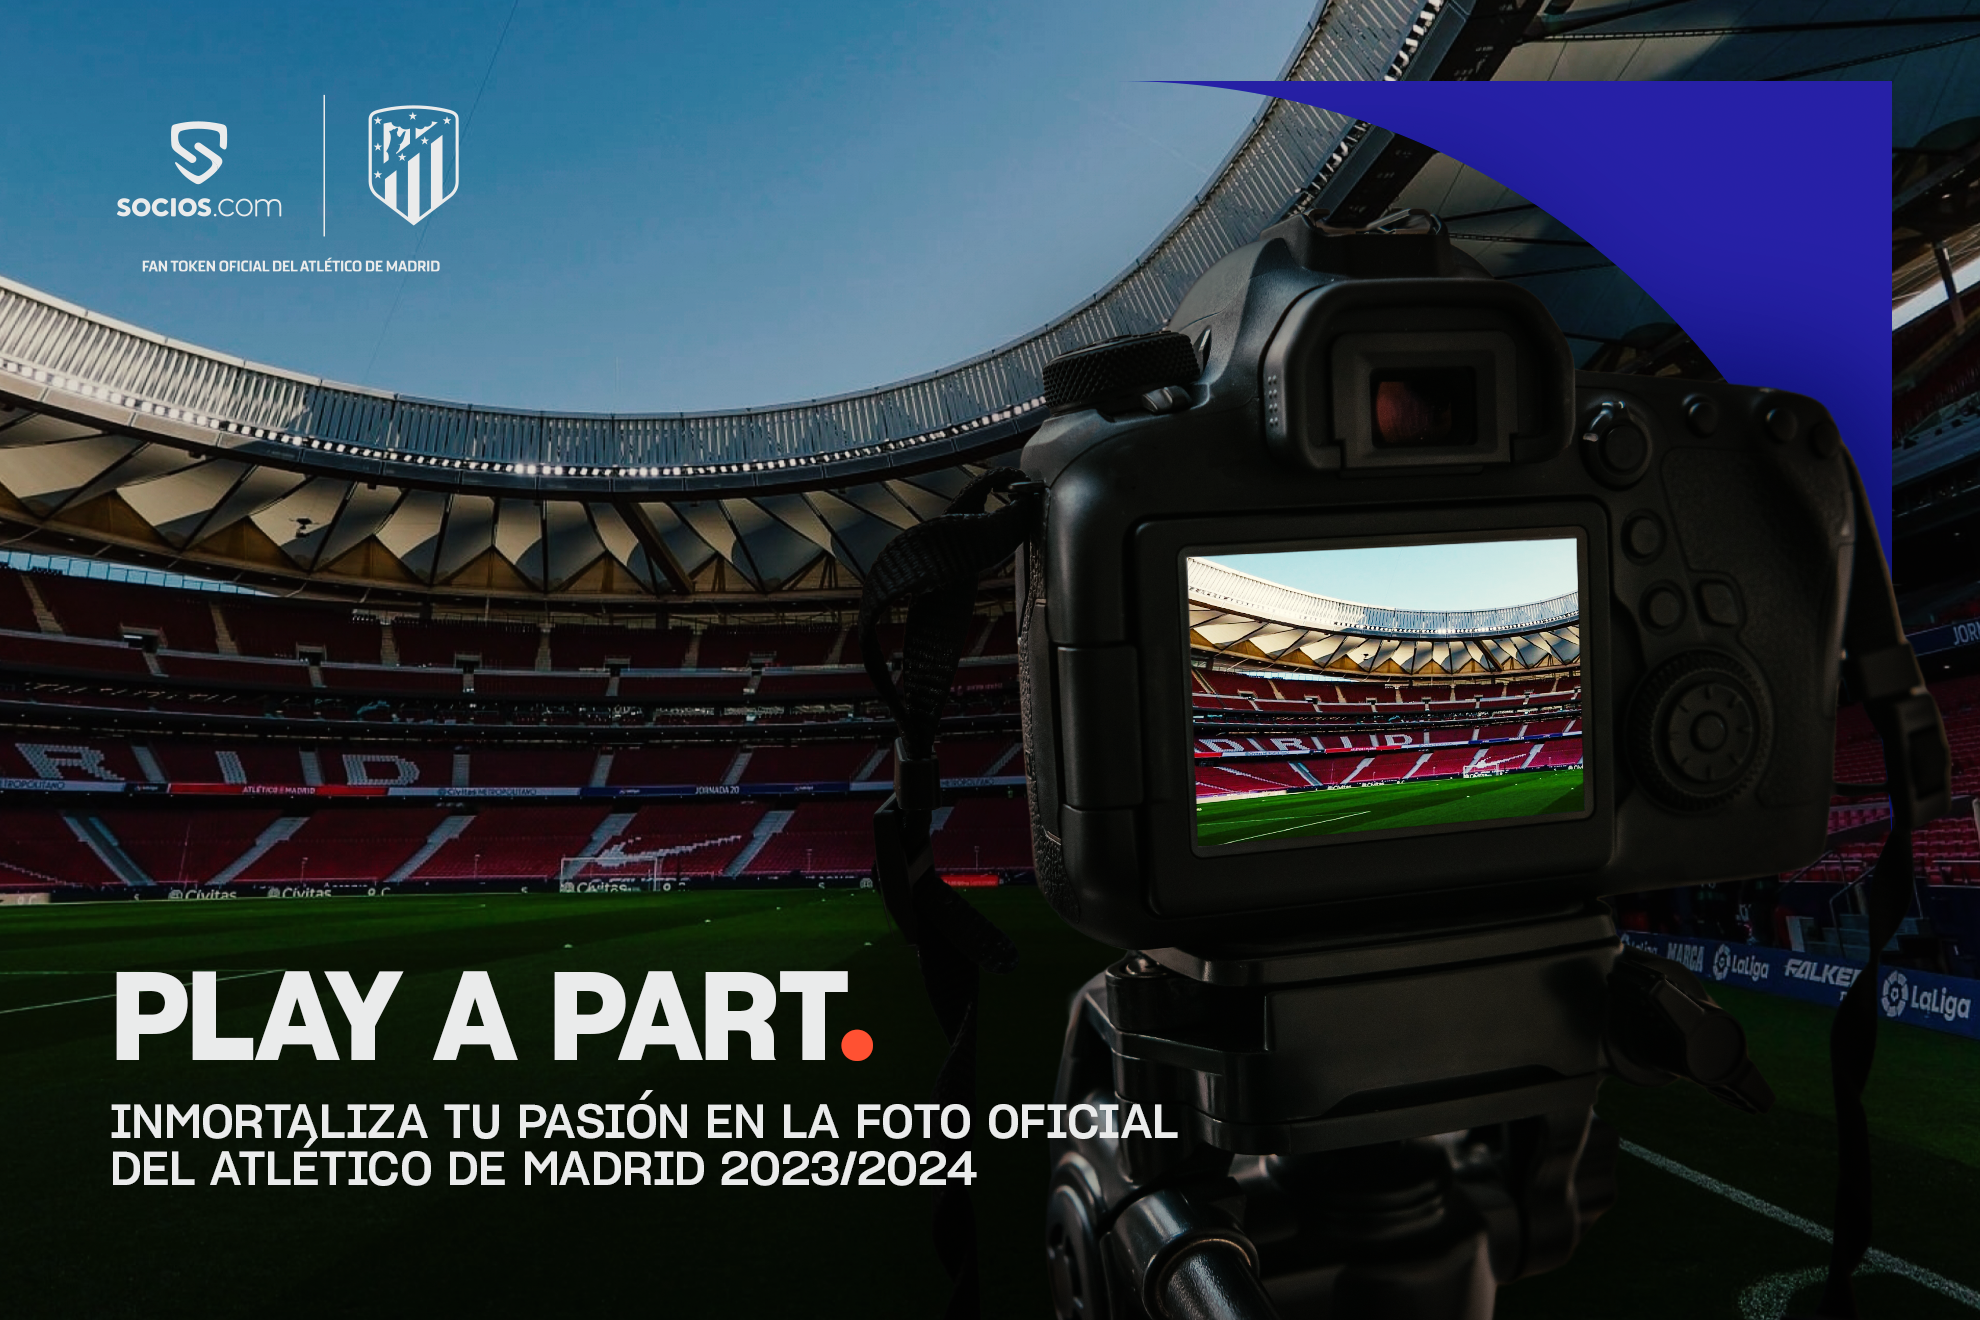 El Atlético de Madrid y Socios.com invitarán a dos tokenistas a posar para la foto oficial de la temporada